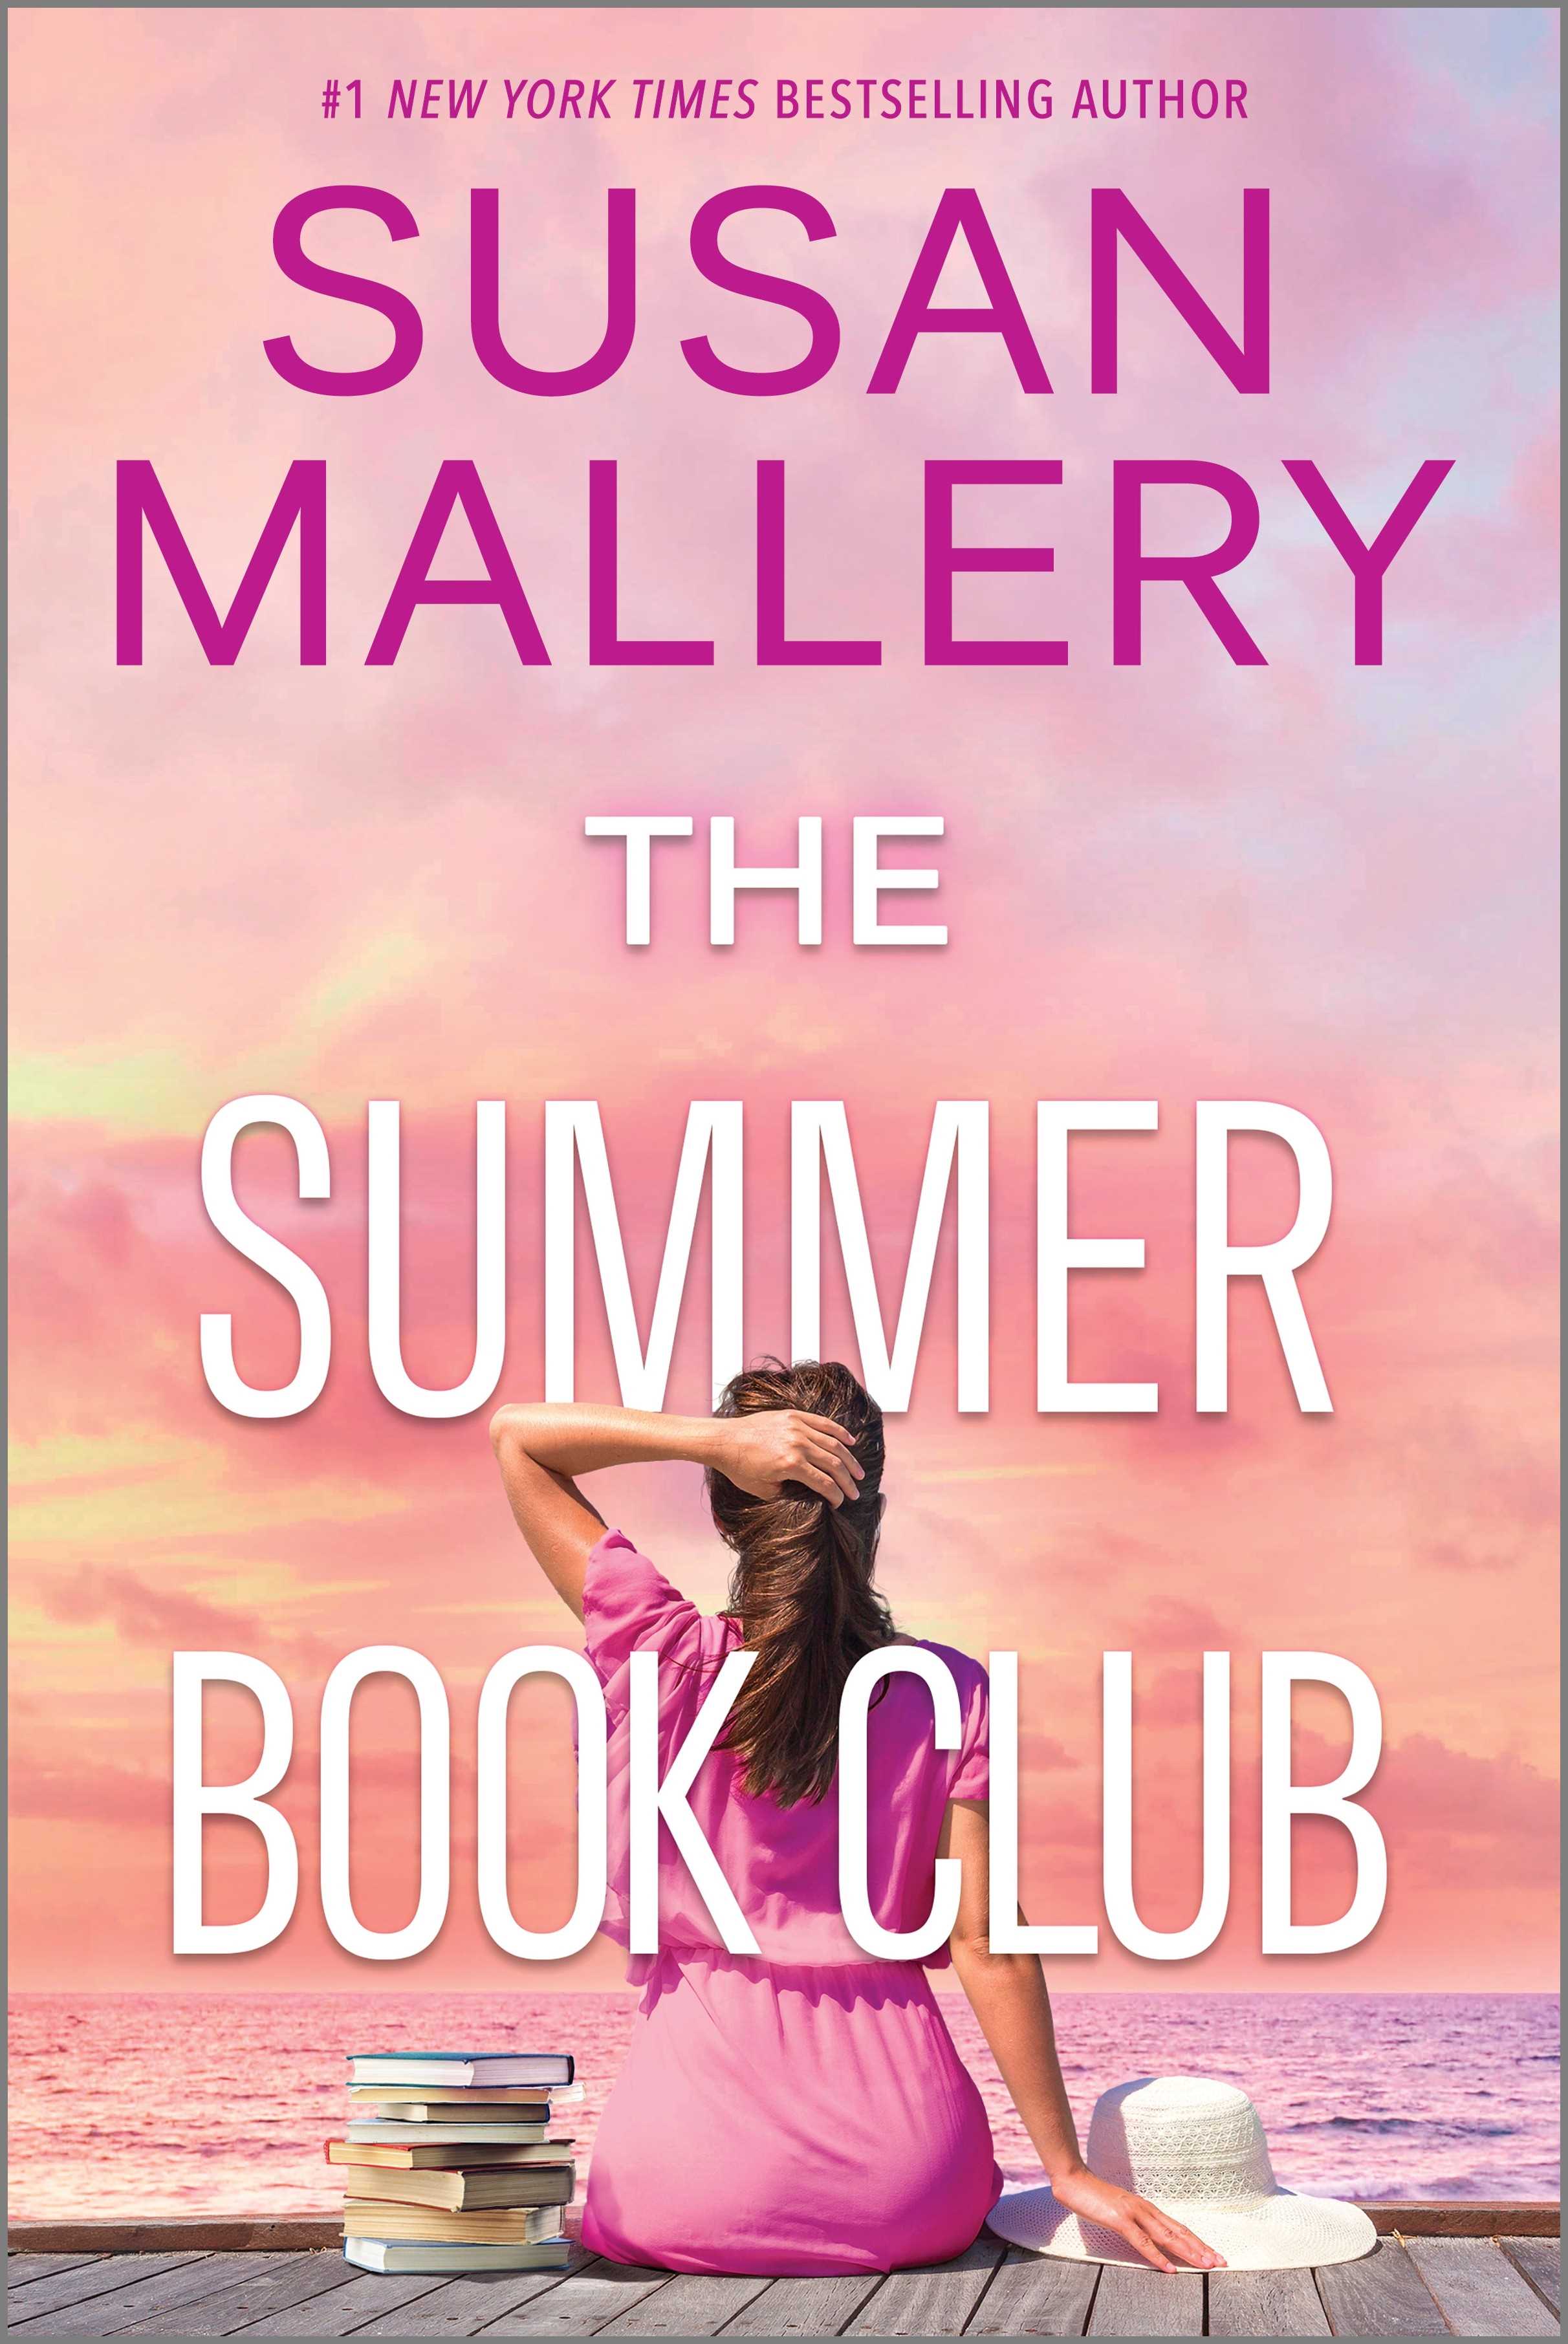 The Summer Book Club